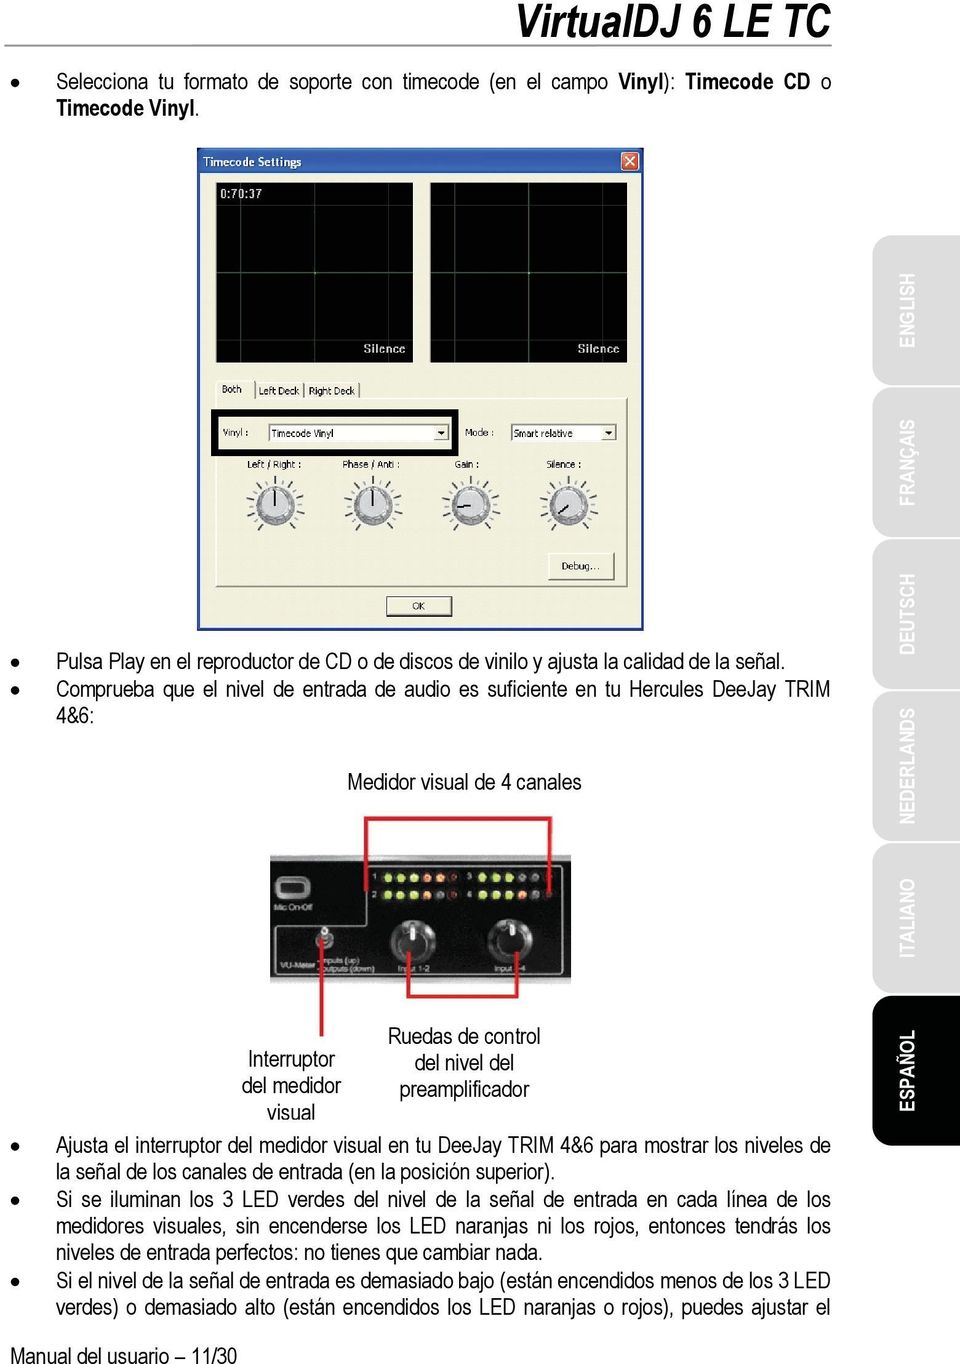 Ajusta el interruptor del medidor visual en tu DeeJay TRIM 4&6 para mostrar los niveles de la señal de los canales de entrada (en la posición superior).